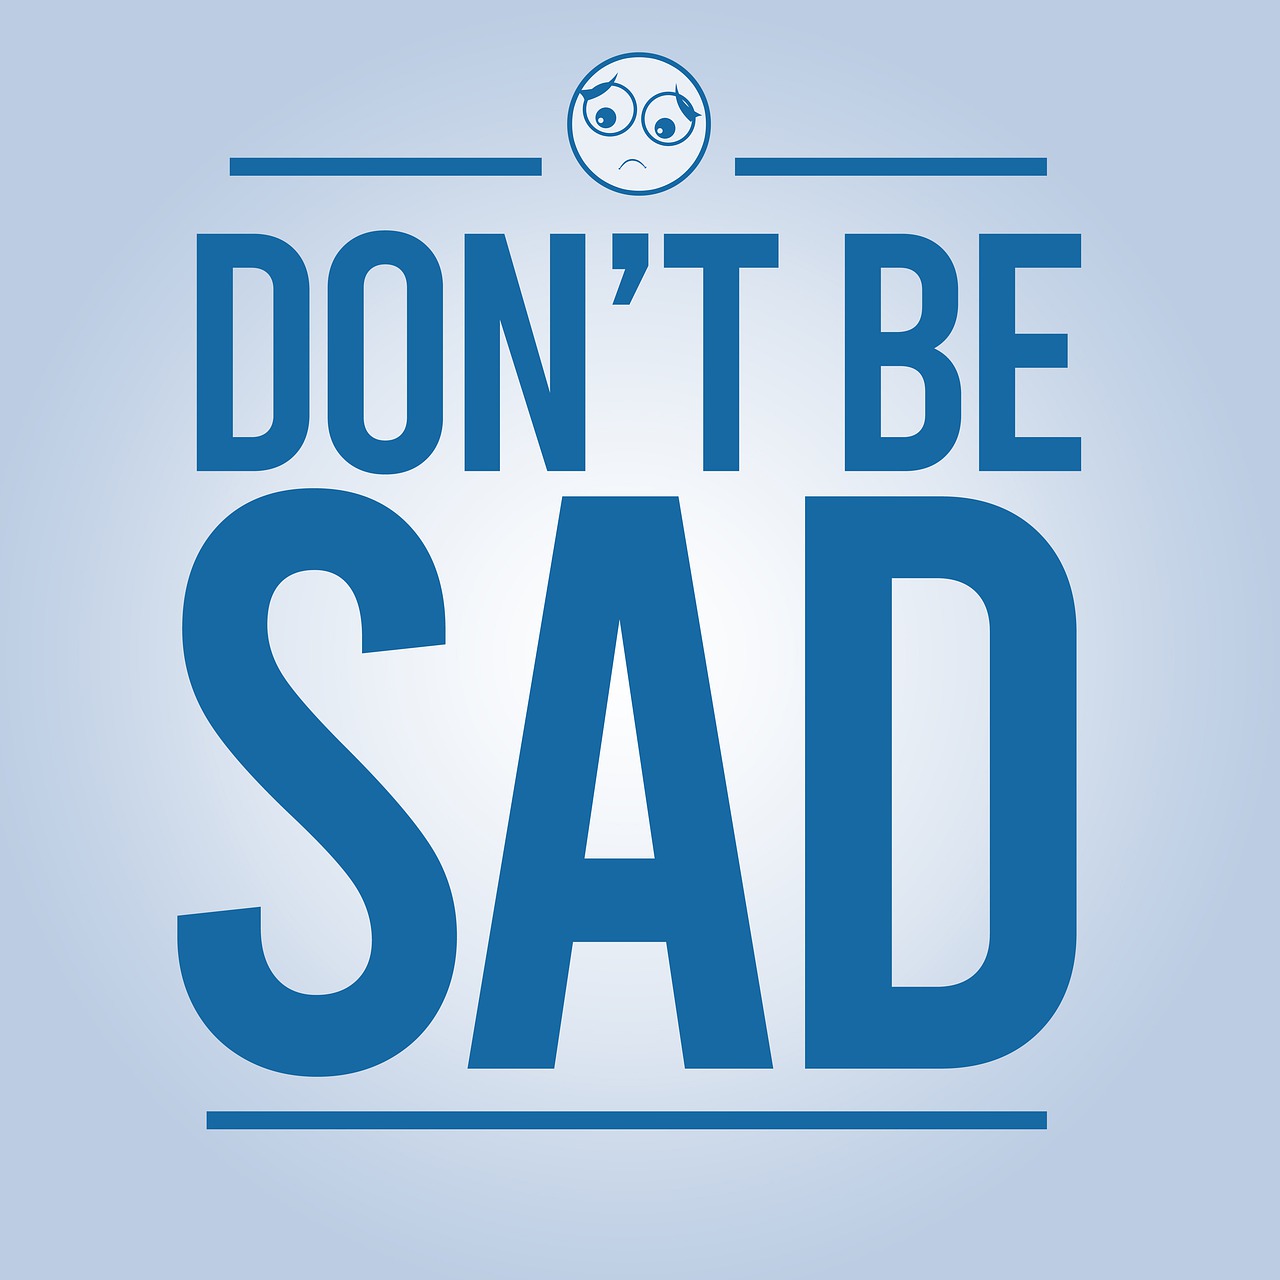 Frases como "No te pongas triste" contribuyen a que la persona con depresión se sienta culpable por no ser capaz de estar mejor. 